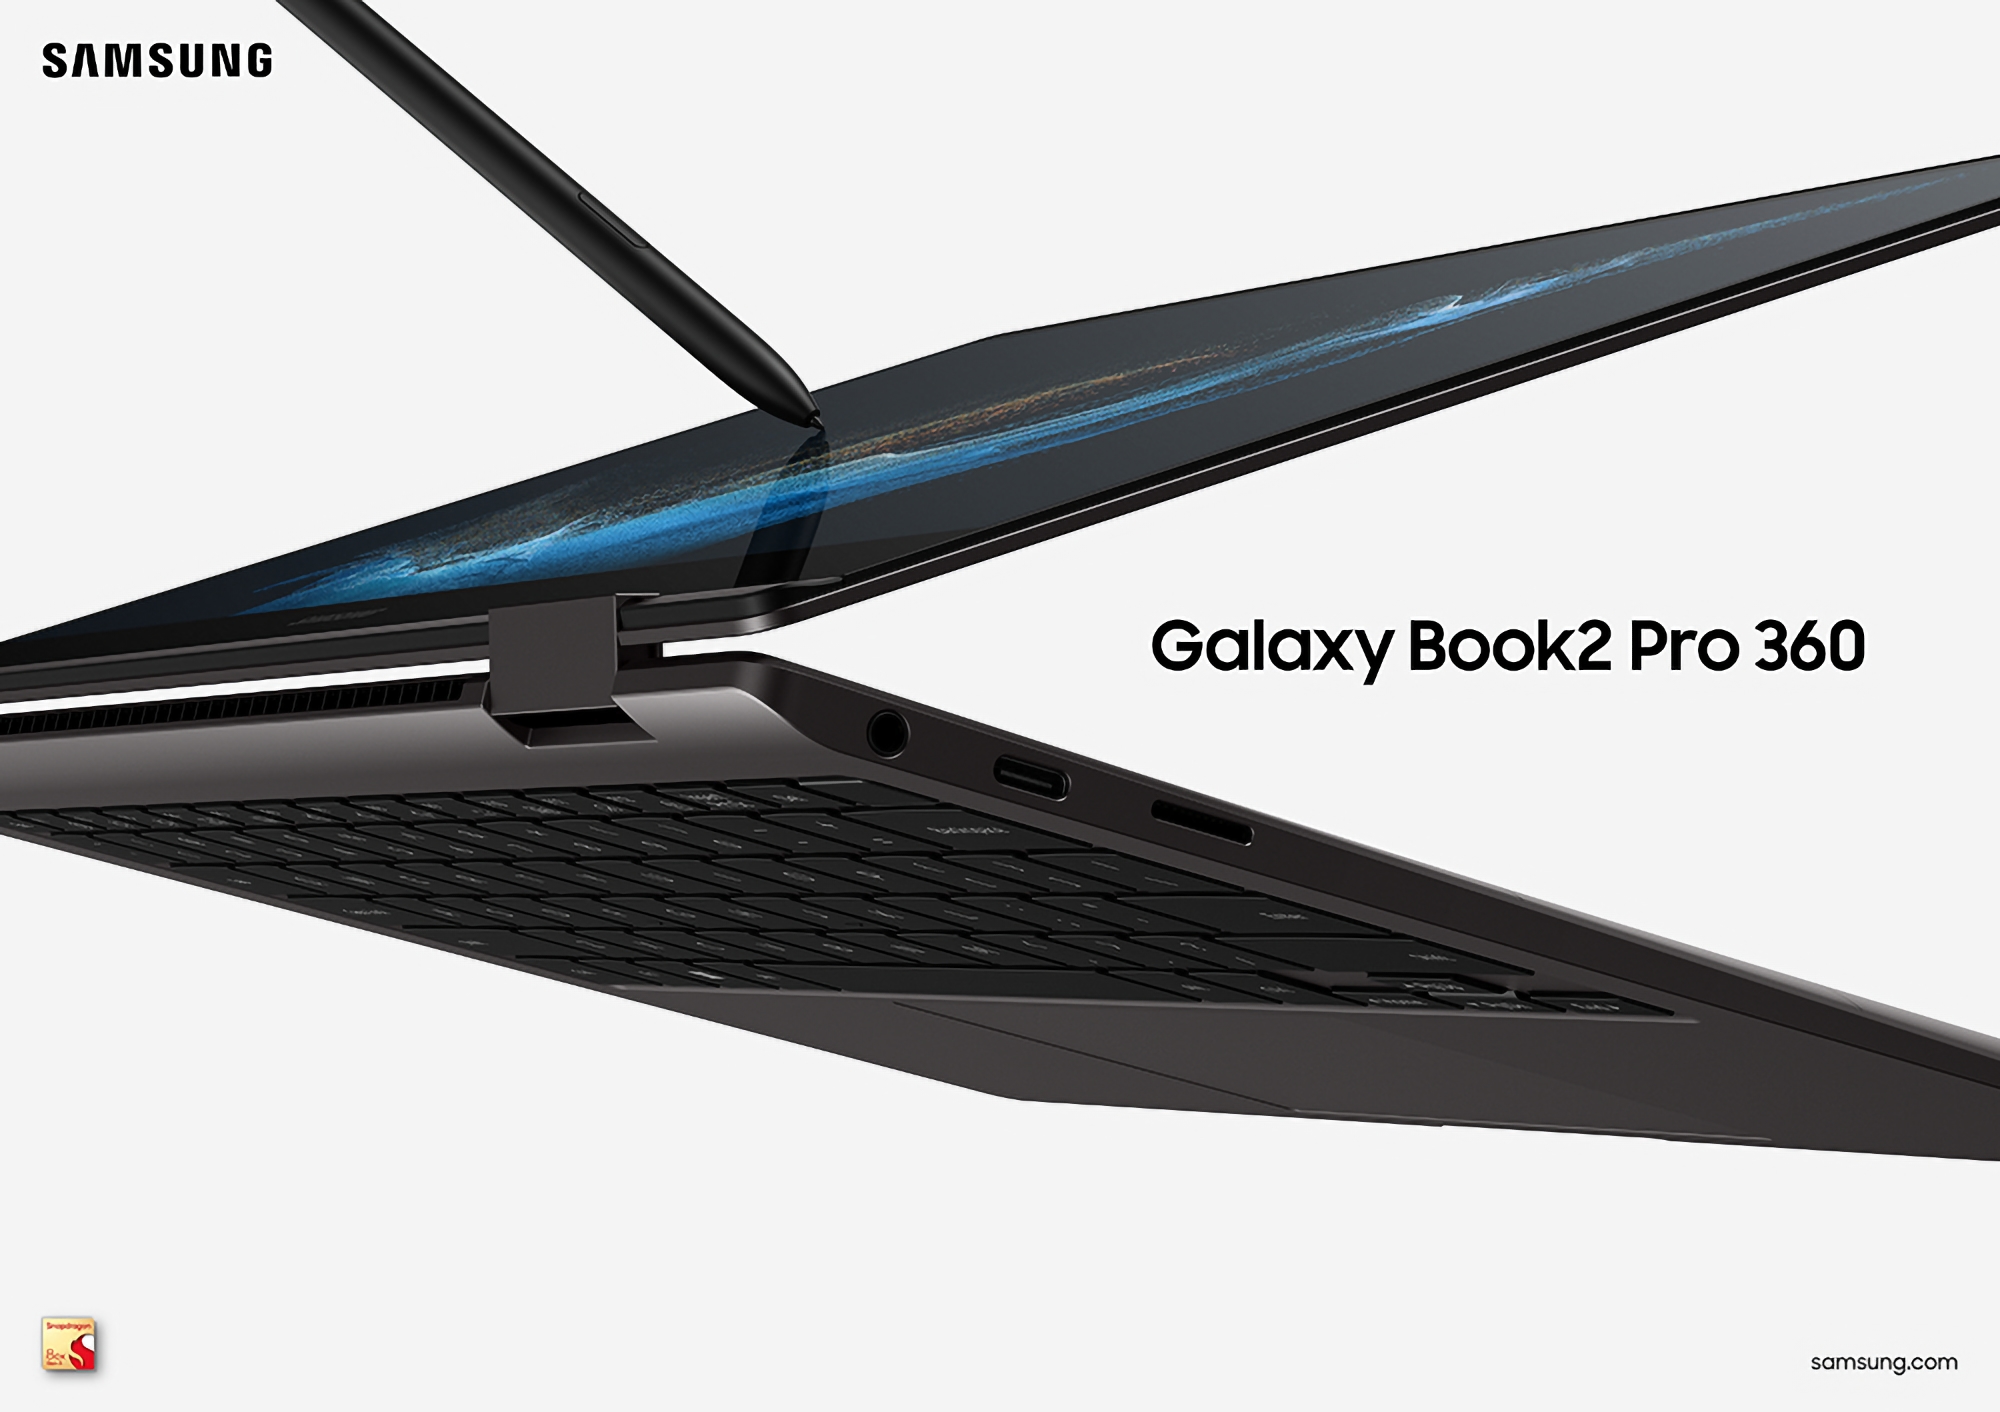 Samsung ha anunciado una nueva versión del Galaxy Book 2 Pro 360 con un chip ARM Qualcomm Snapdragon 8cx Gen 3